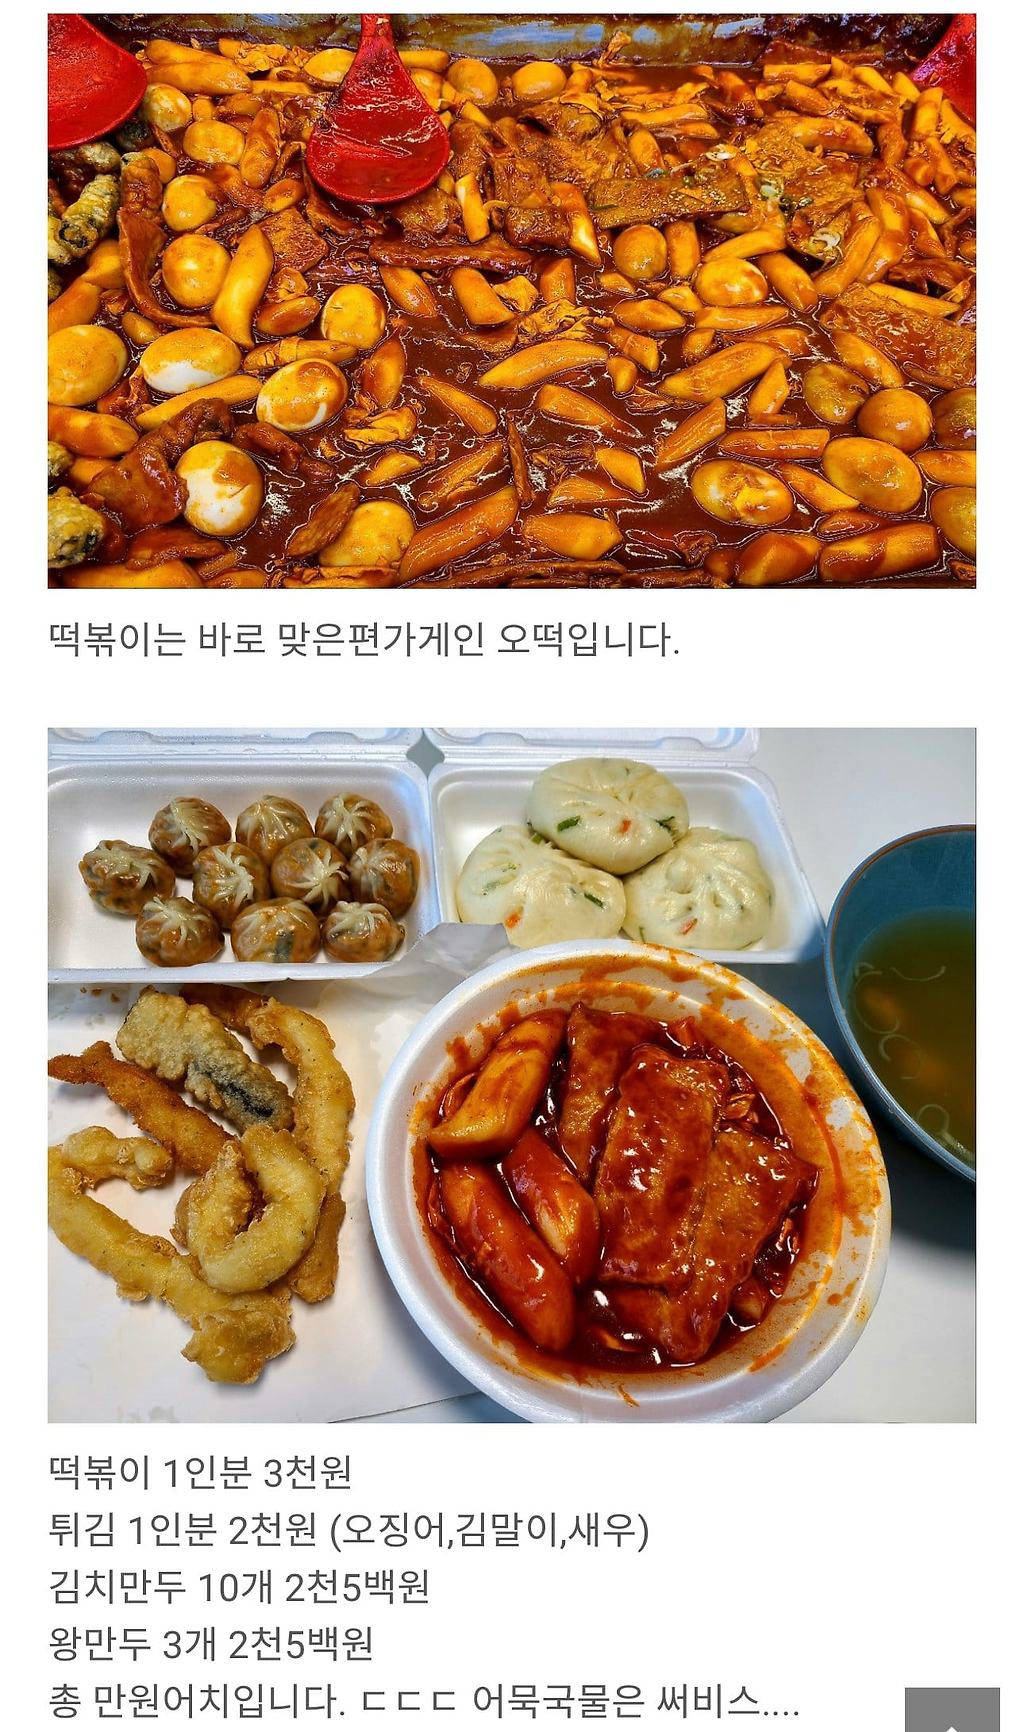 대전 시장에서 분식 1만원어치 먹기